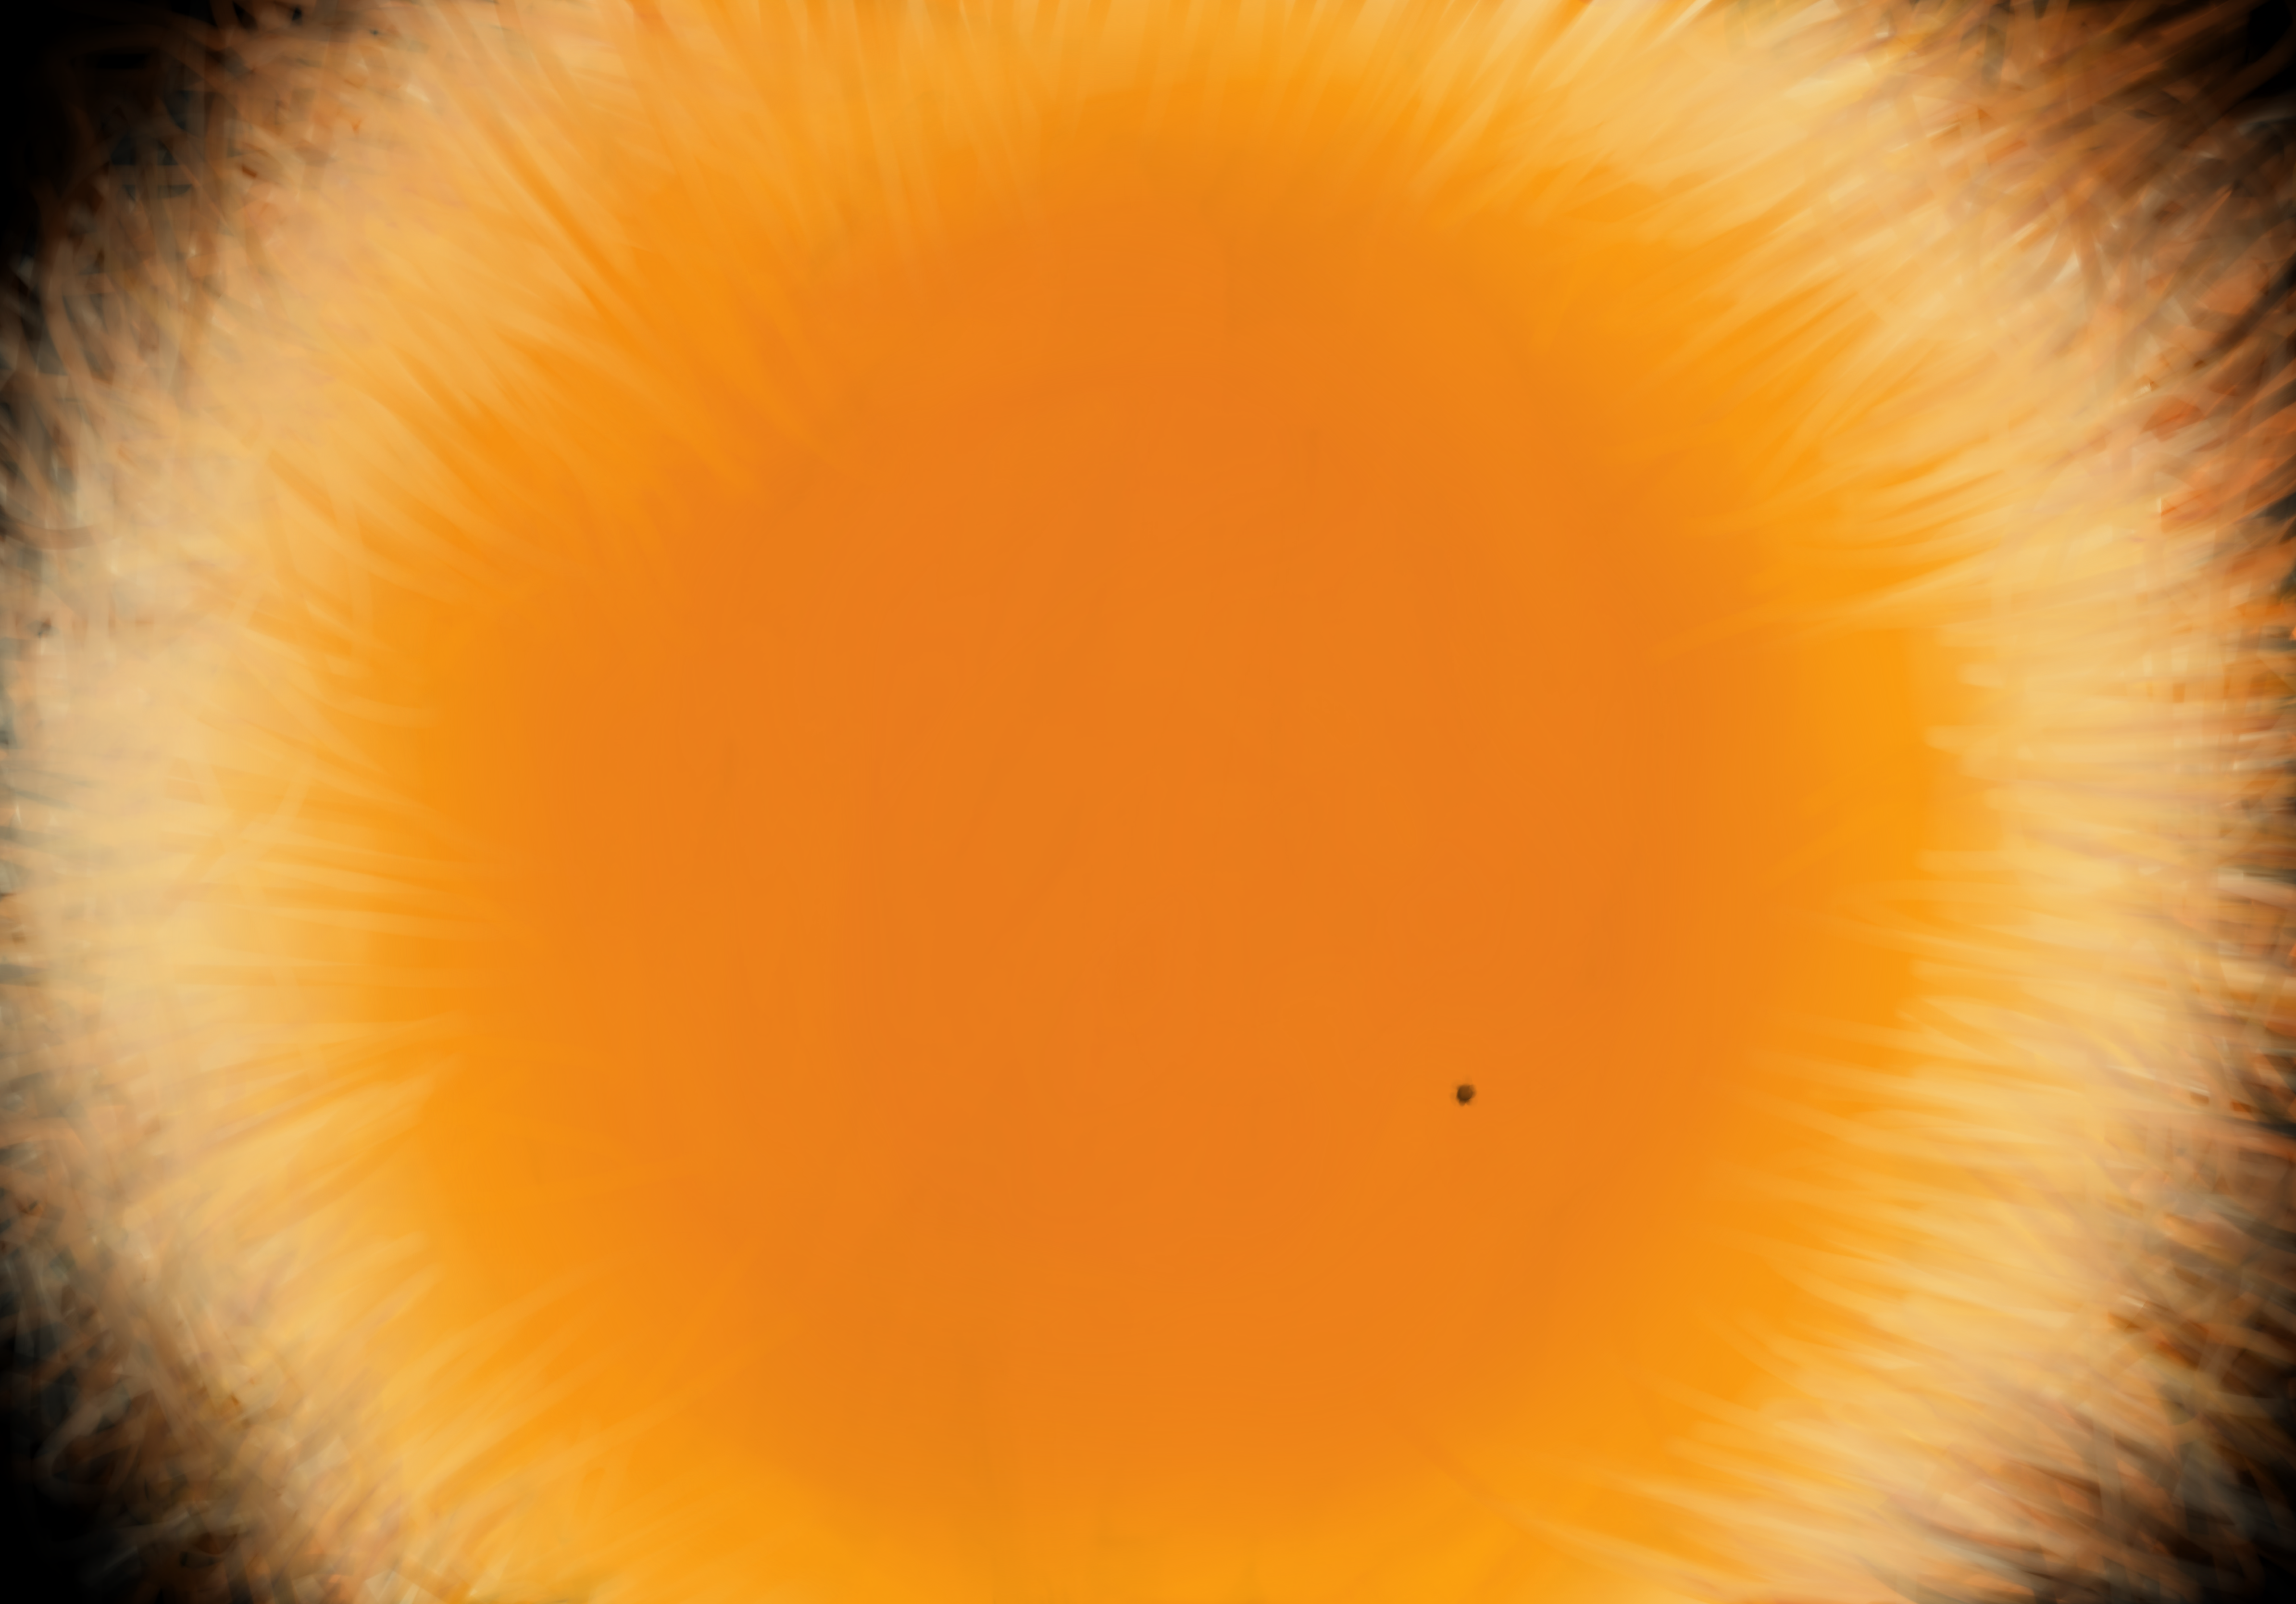 Sun Spots Image